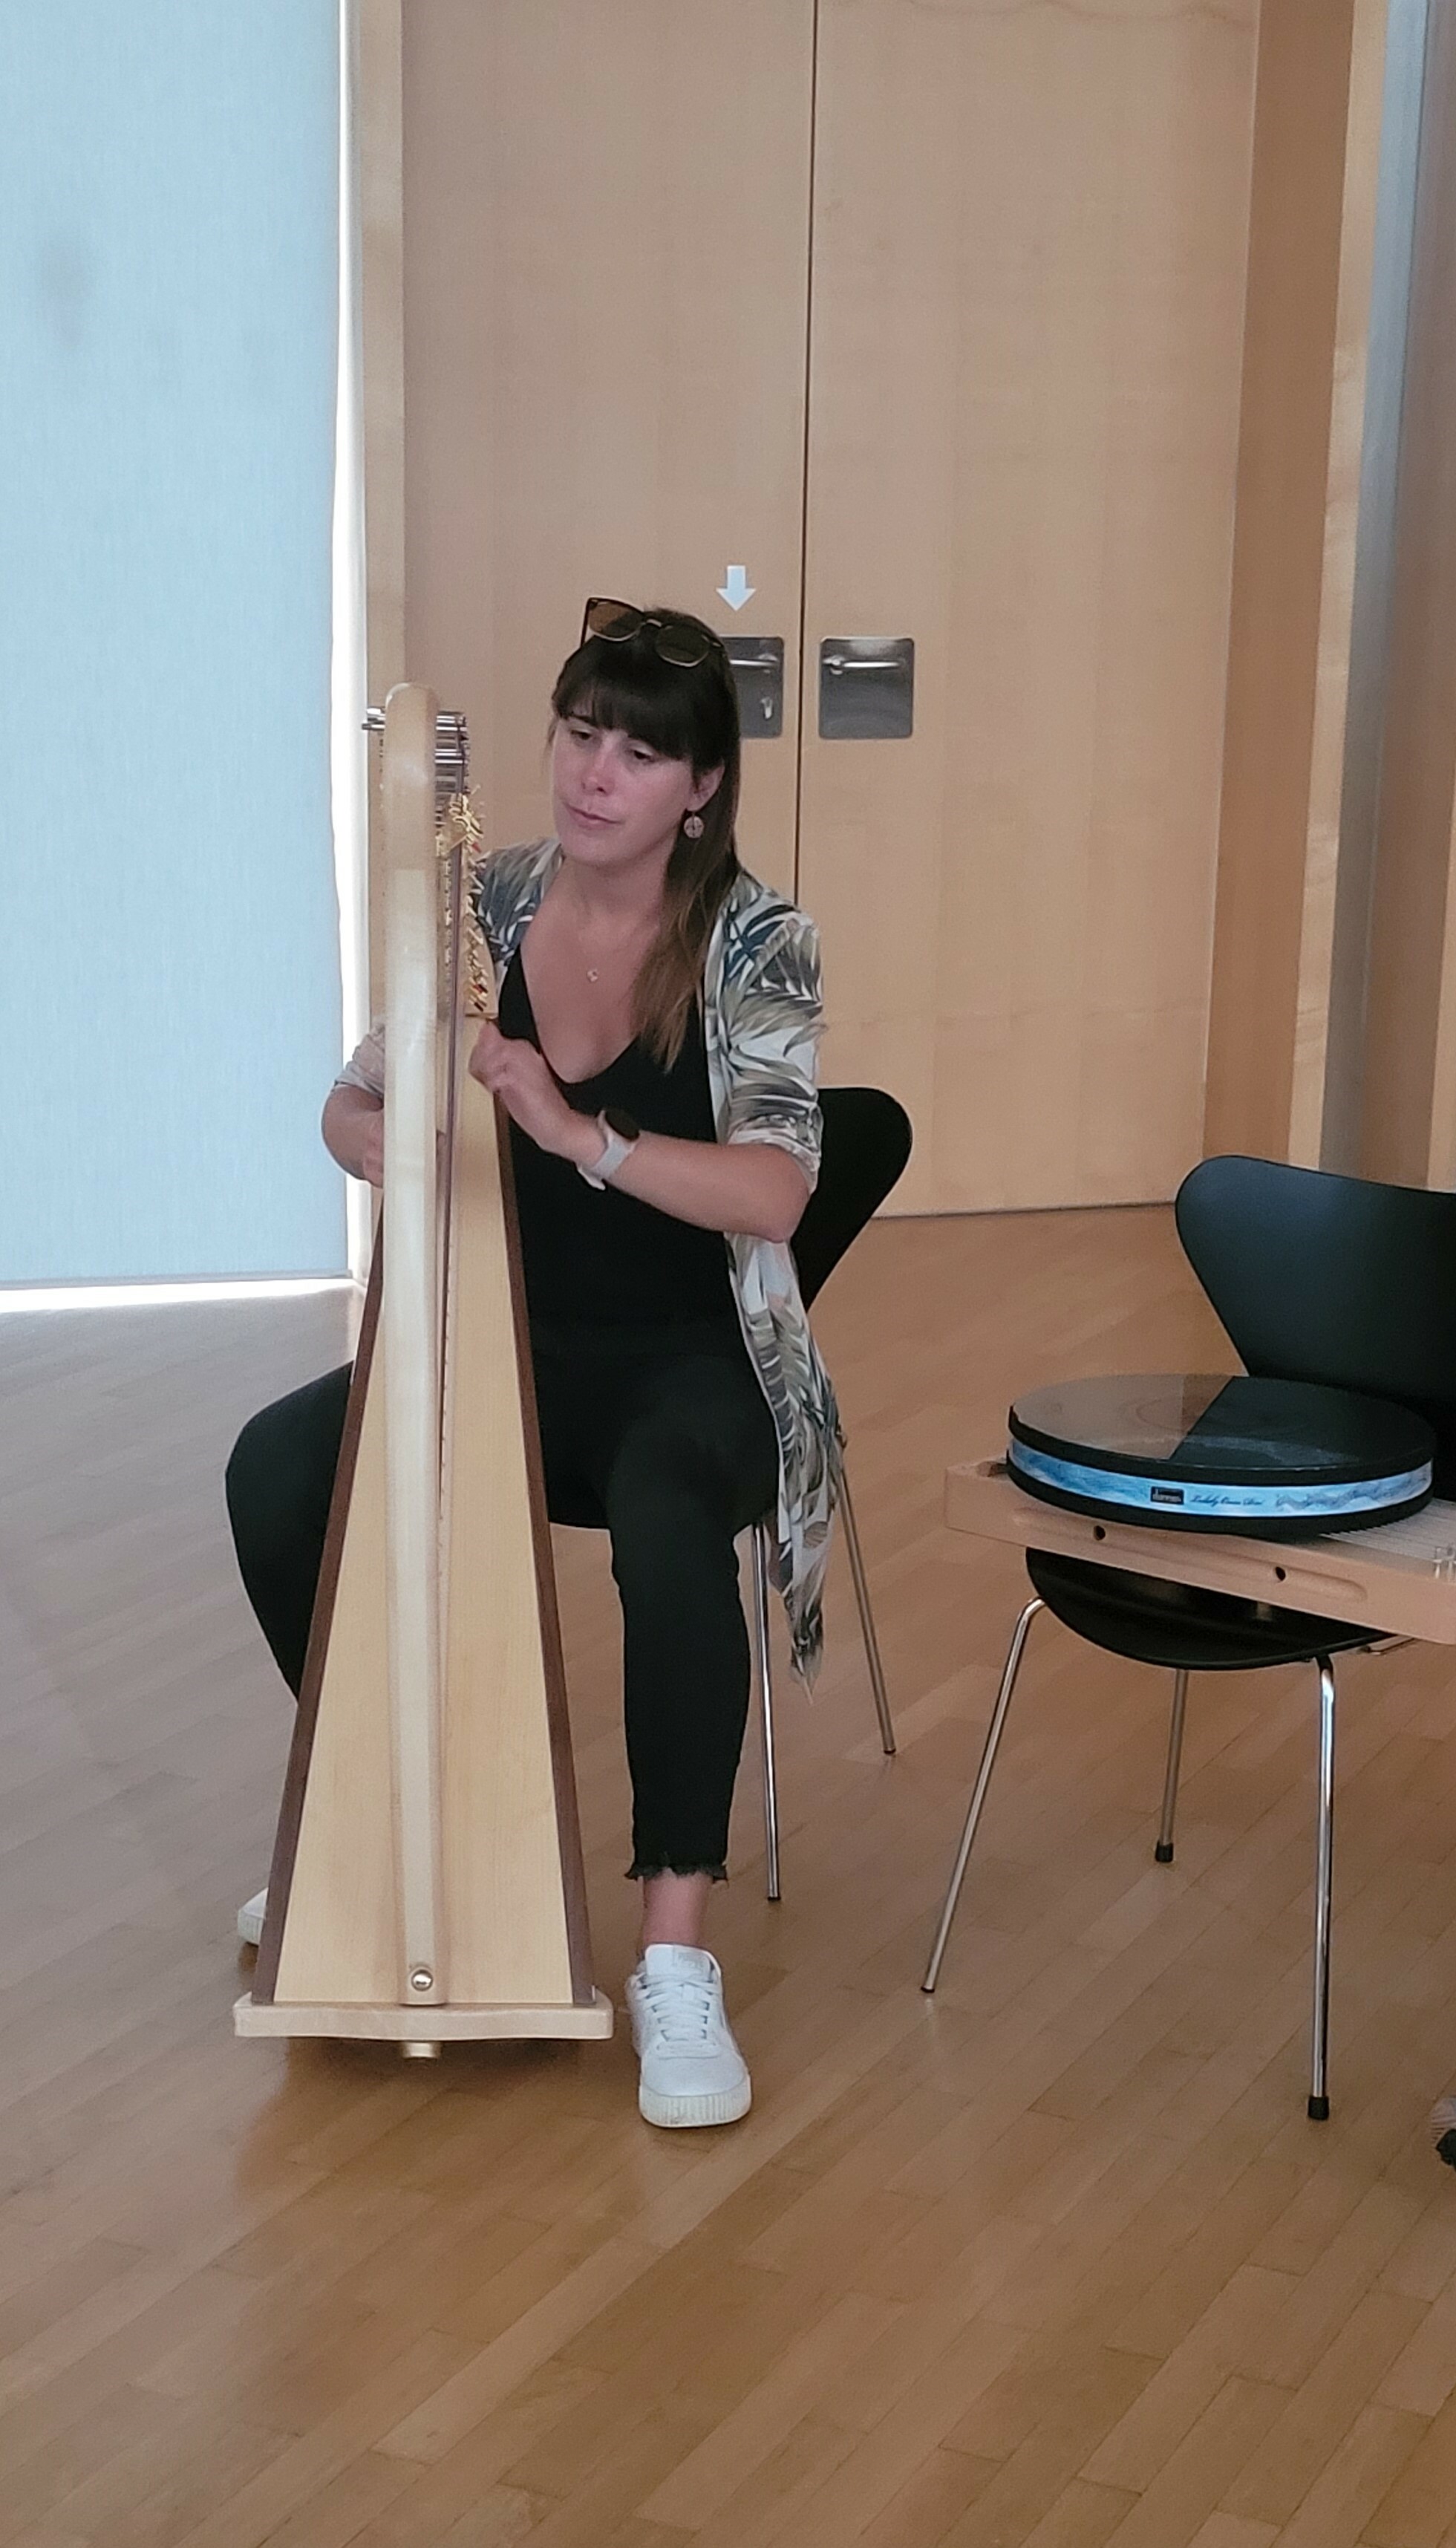 Musiktherapeut*in mit Harfe  (vergrößerete Ansicht in der Galerie)